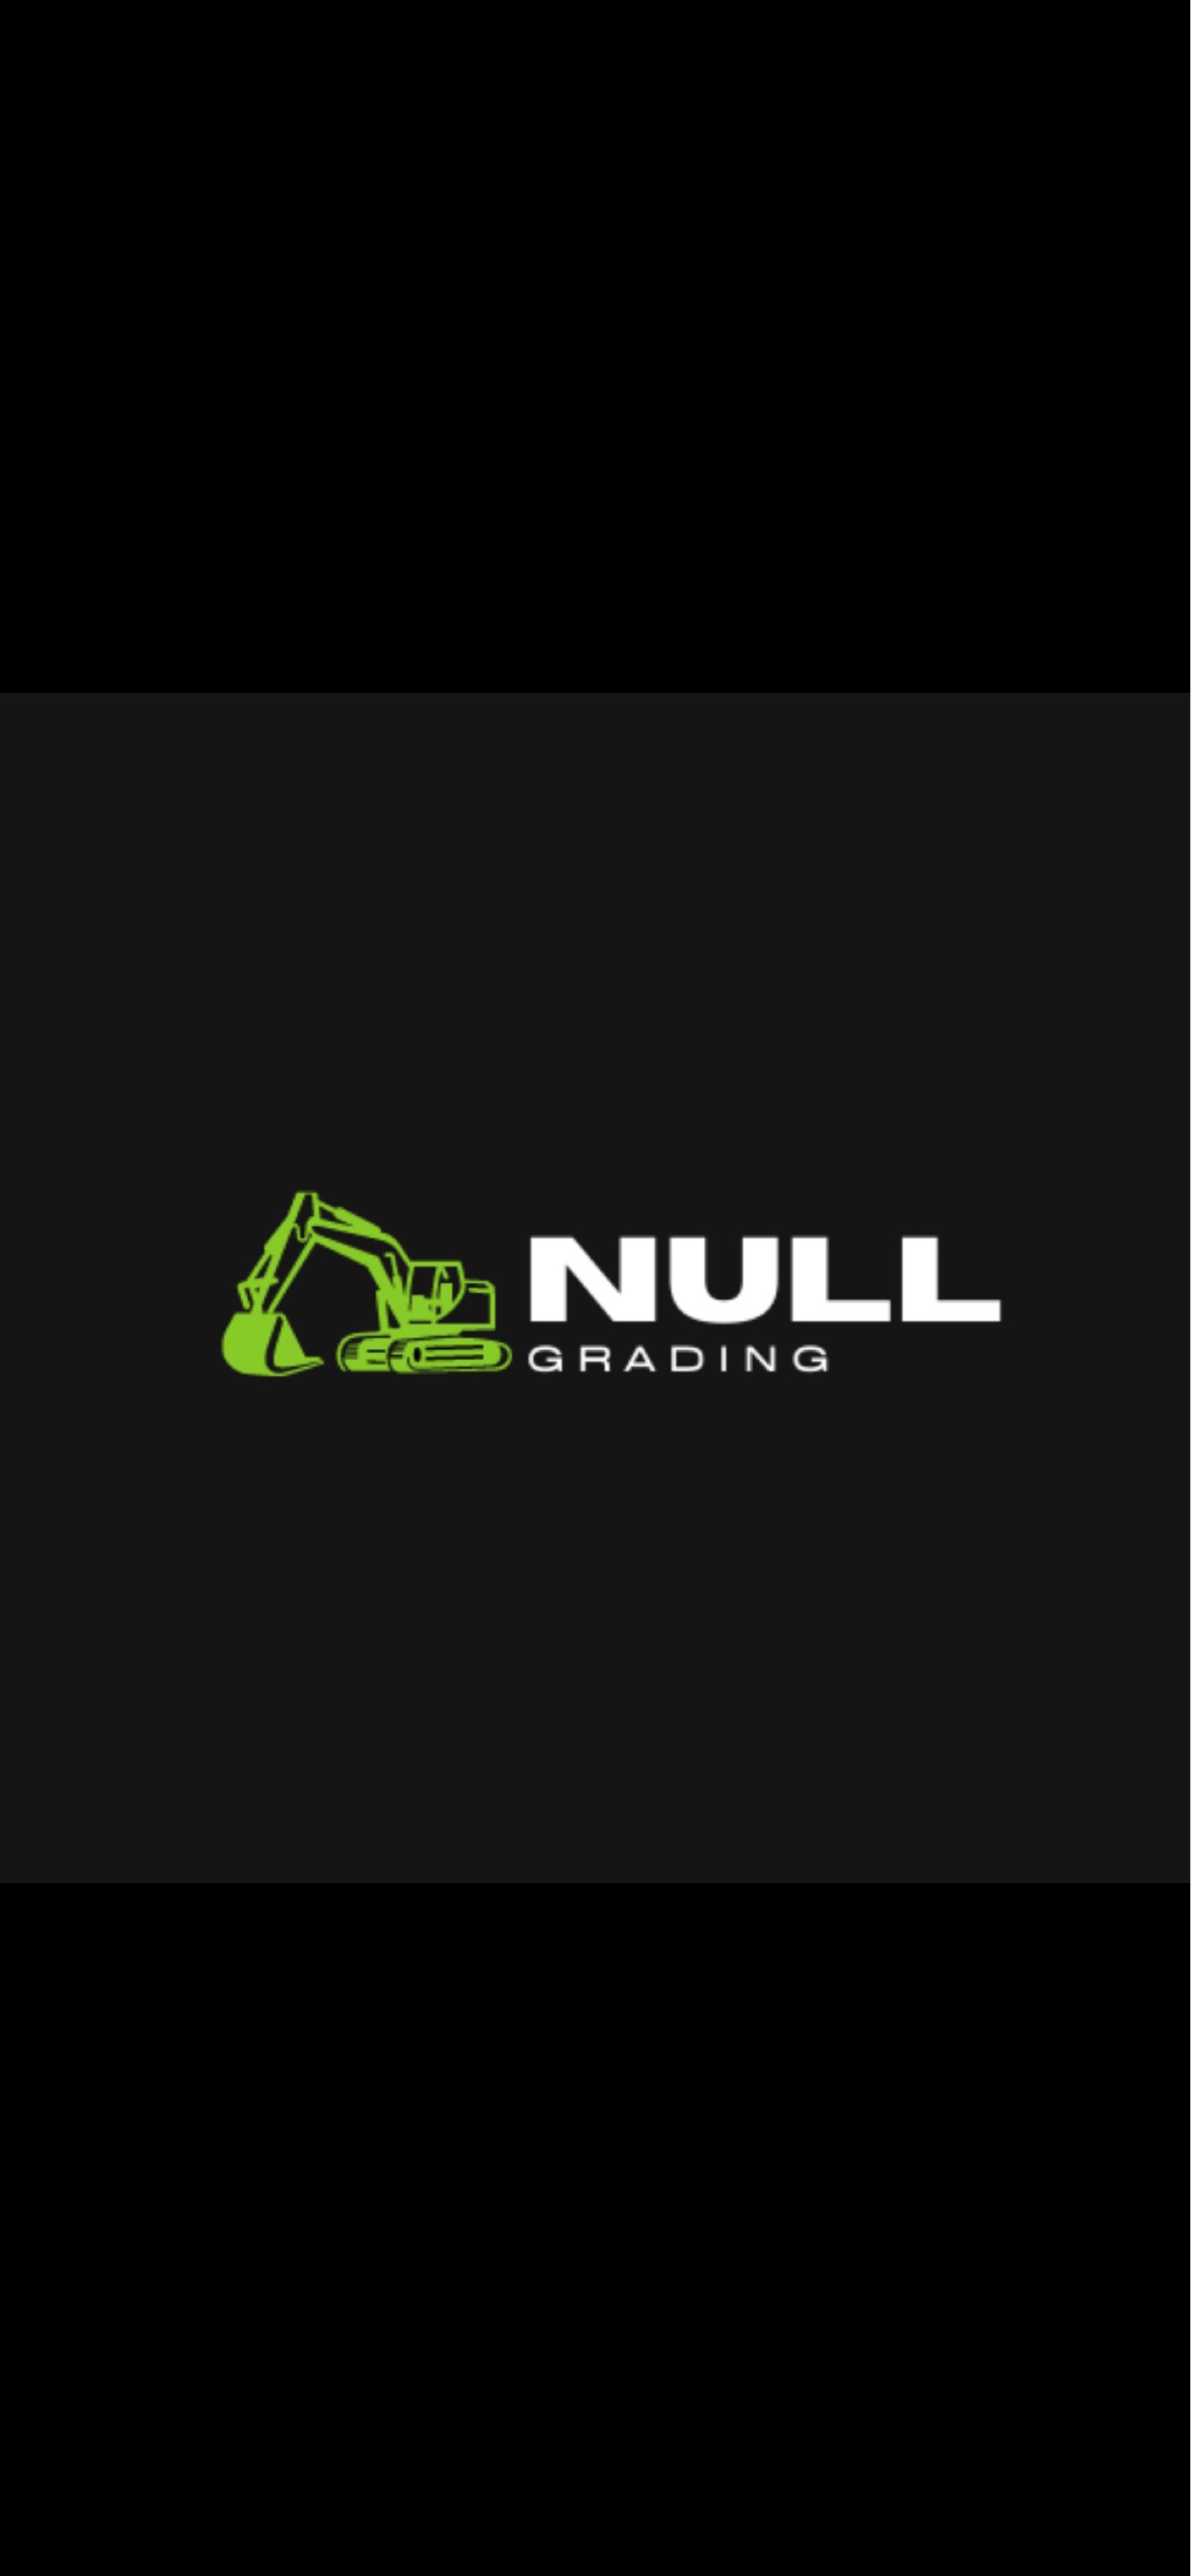 Null Grading LLC - Home  Facebook Logo